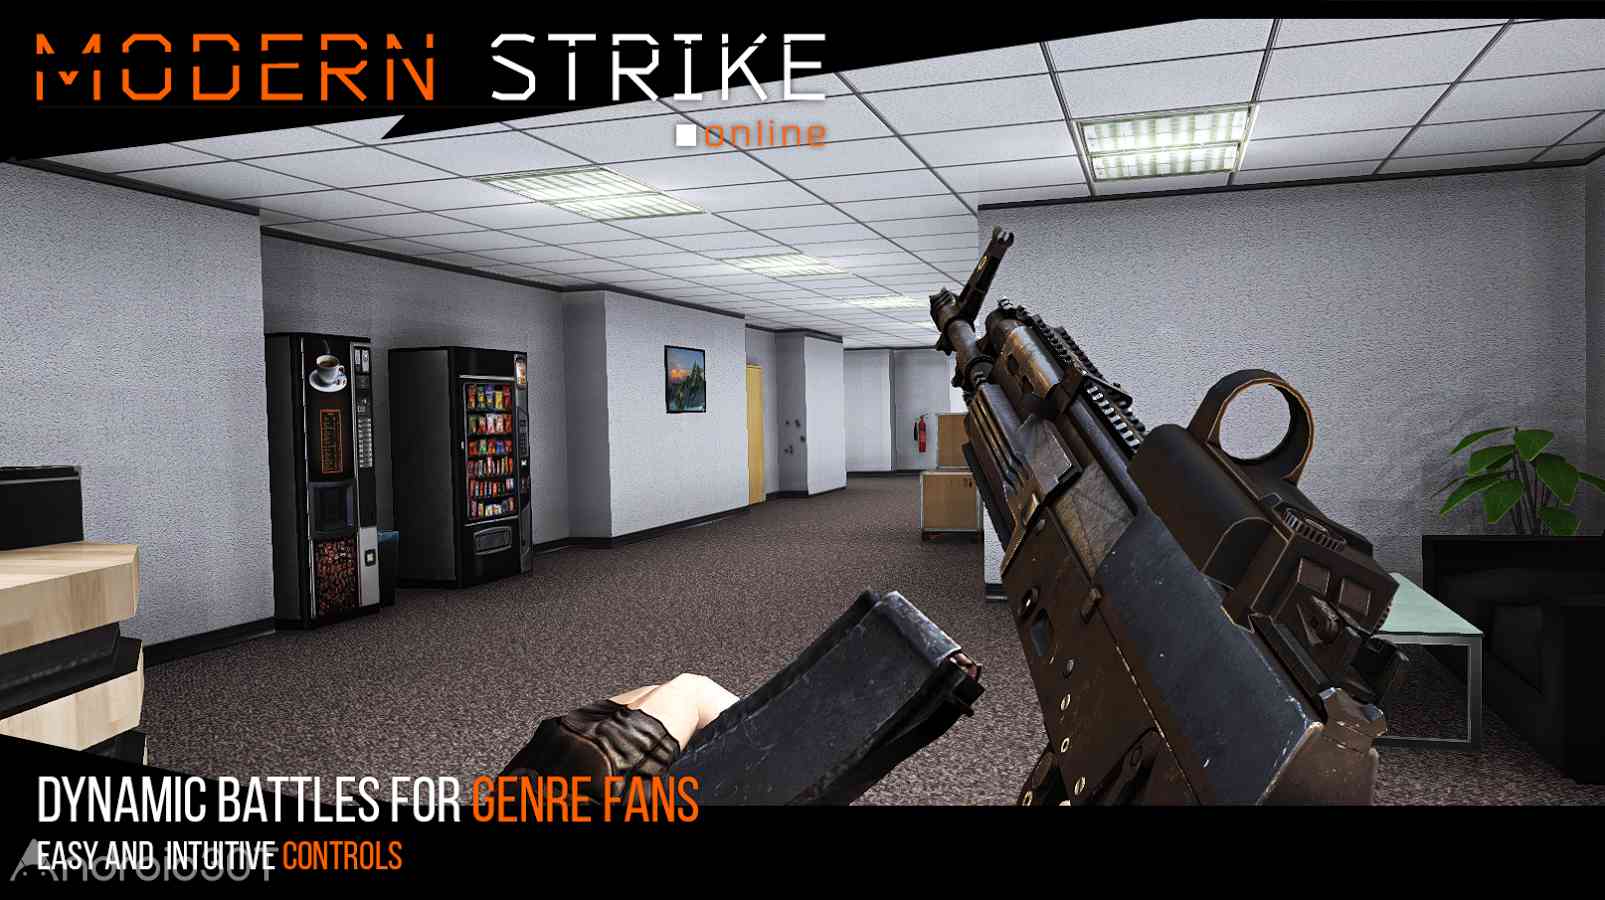 دانلود Modern Strike Online 1.51.0 – بازی تیر اندازی در دنیای مدرن اندروید